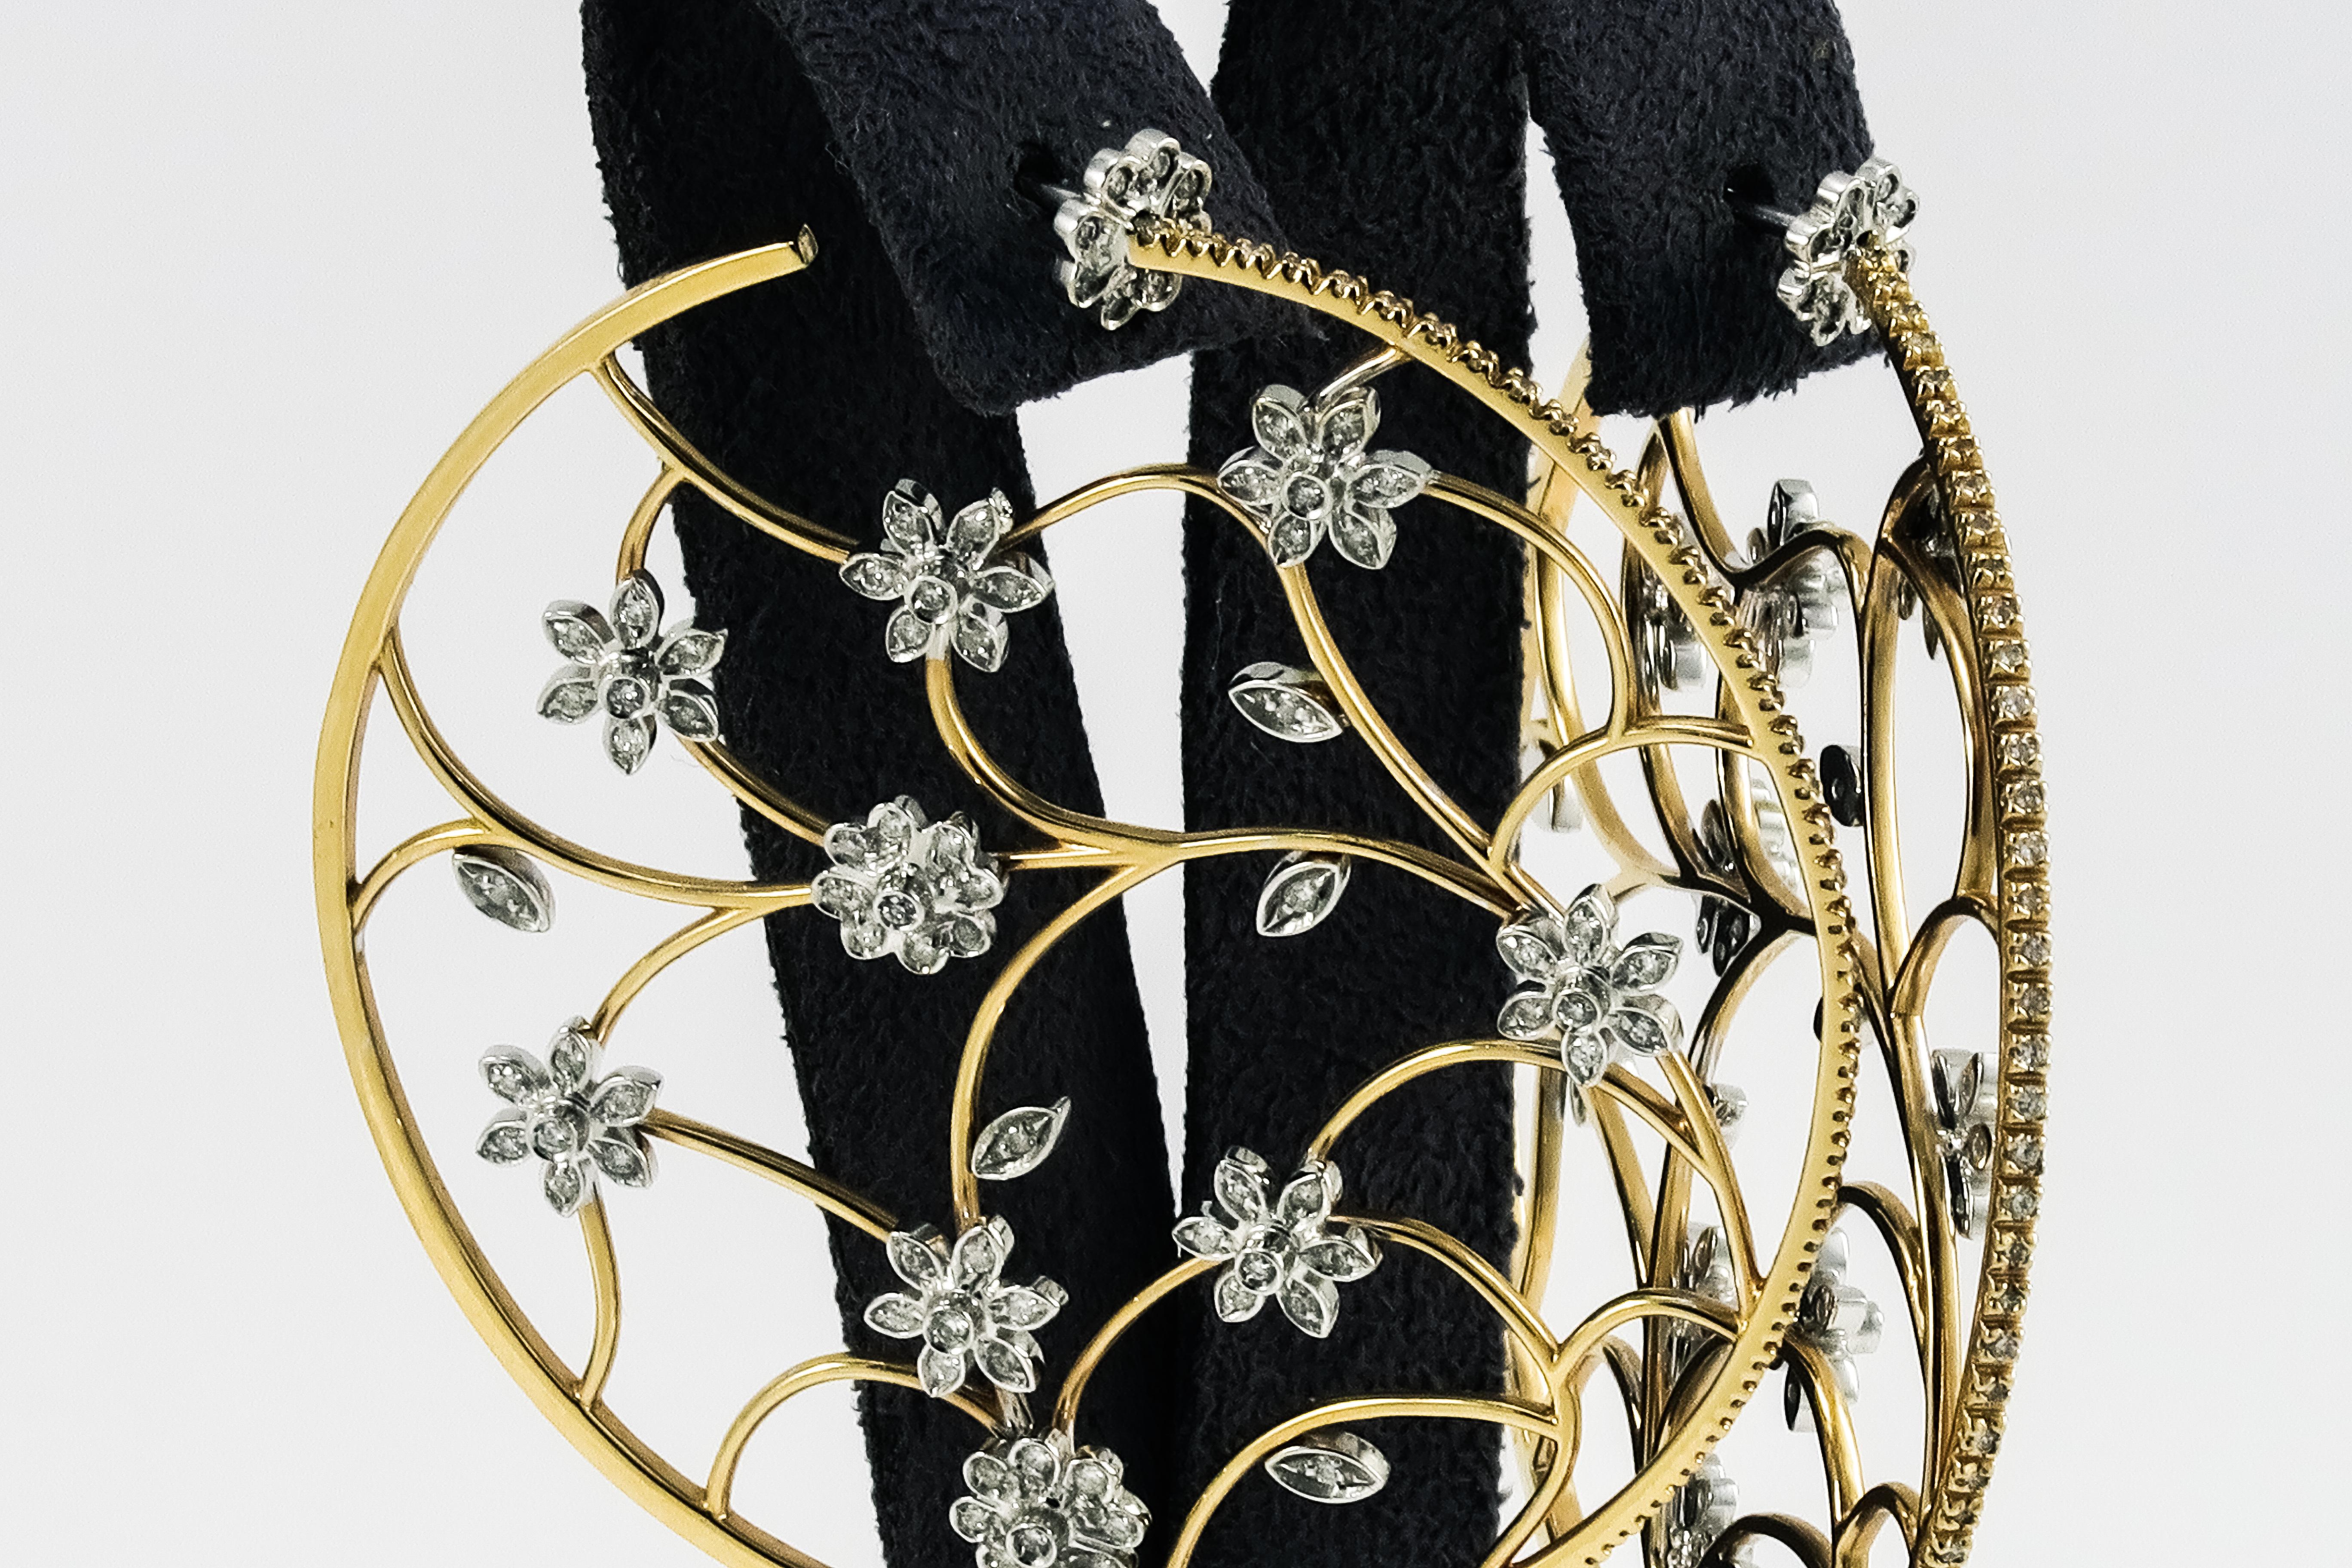 Women's 18 Karat Yellow Gold and Diamonds Openwork Hoop Earrings with Flower Details